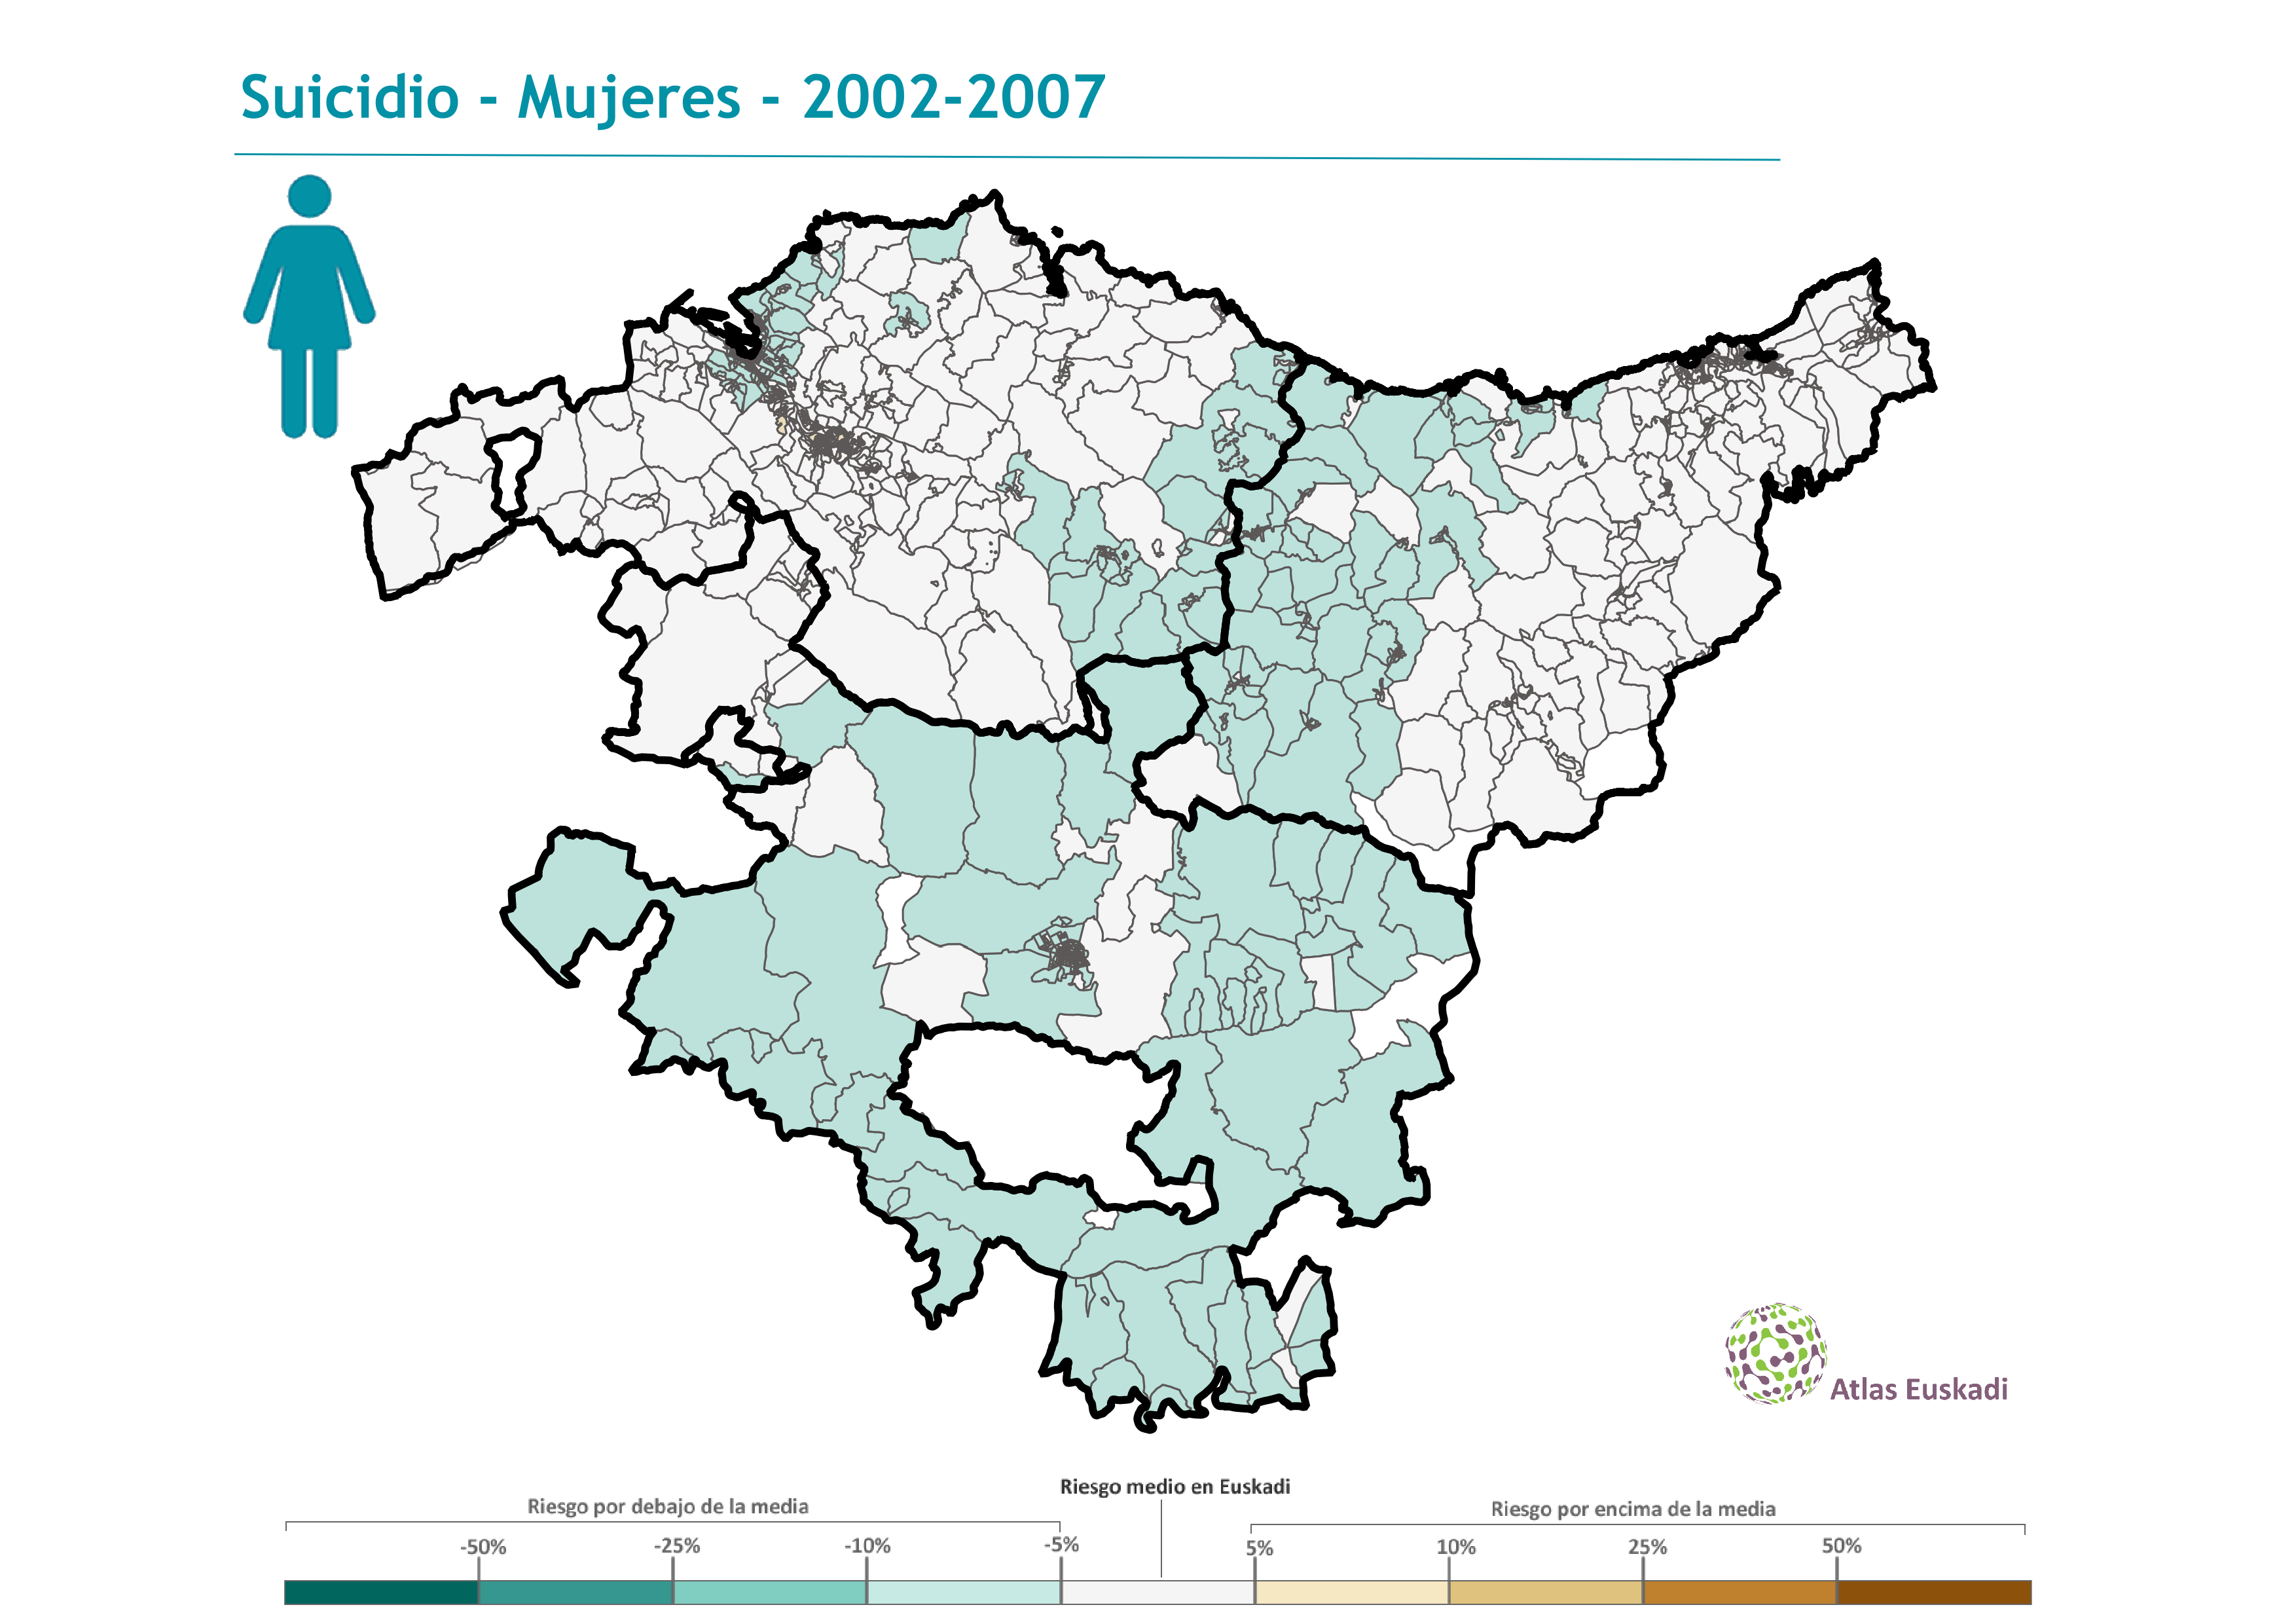 Suicidio mujeres  2002-2007 Euskadi